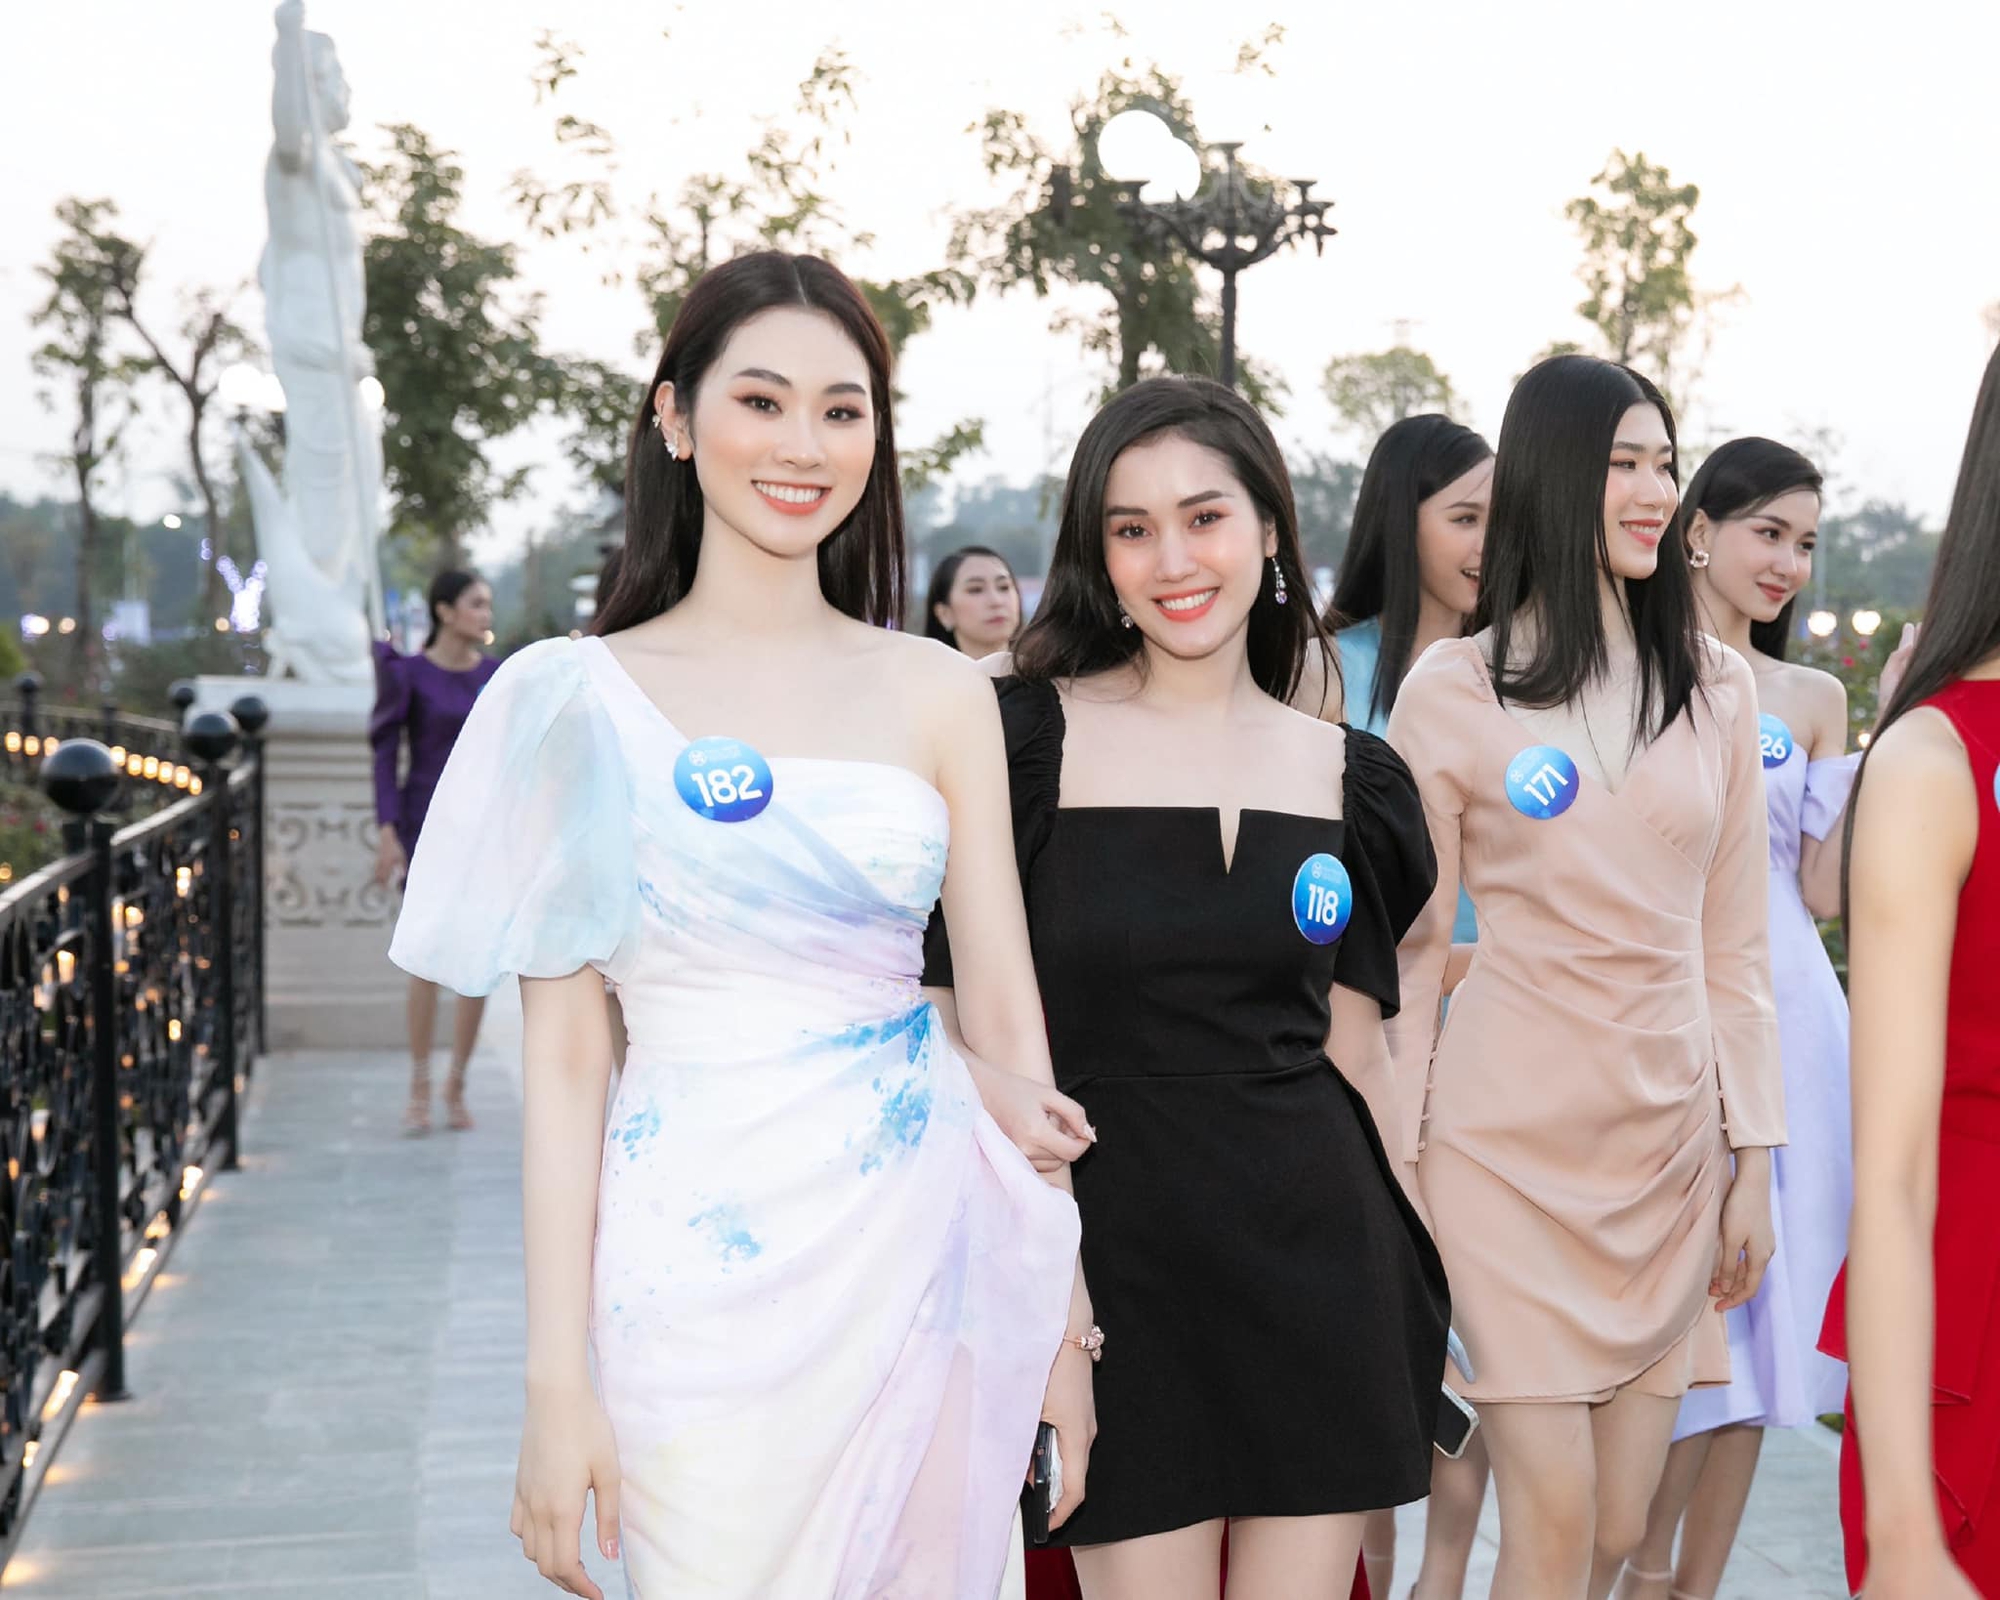 Nhan sắc xinh đẹp, quyến rũ của nữ sinh Ngoại giao cao 1,74 m vào thẳng Top 20 chung kết Miss World Vietnam 2022 - Ảnh 8.